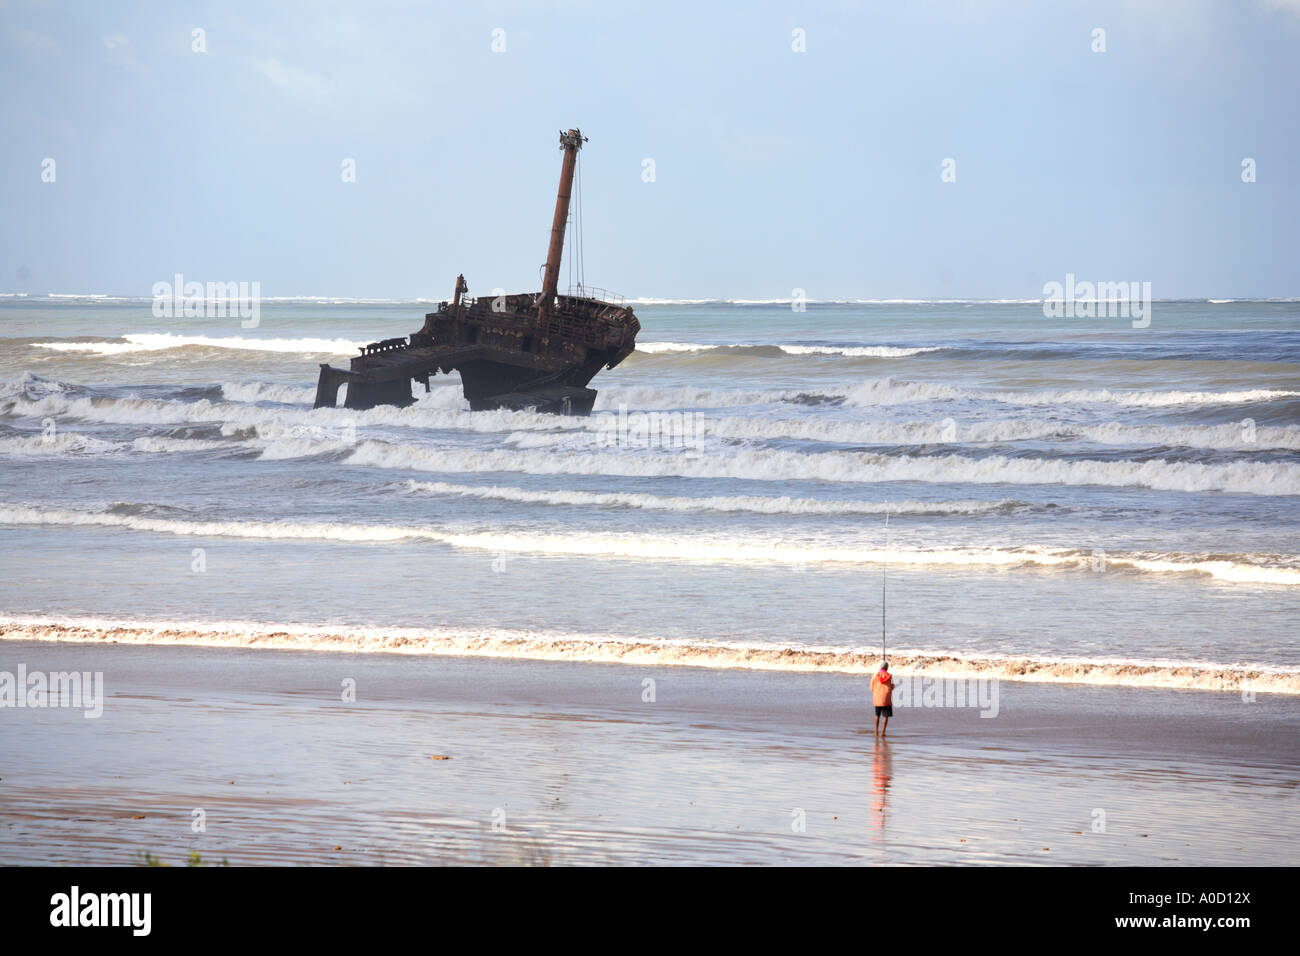 L'épave d'un navire au large de la plage de Haouzia à El Jadida au Maroc Banque D'Images